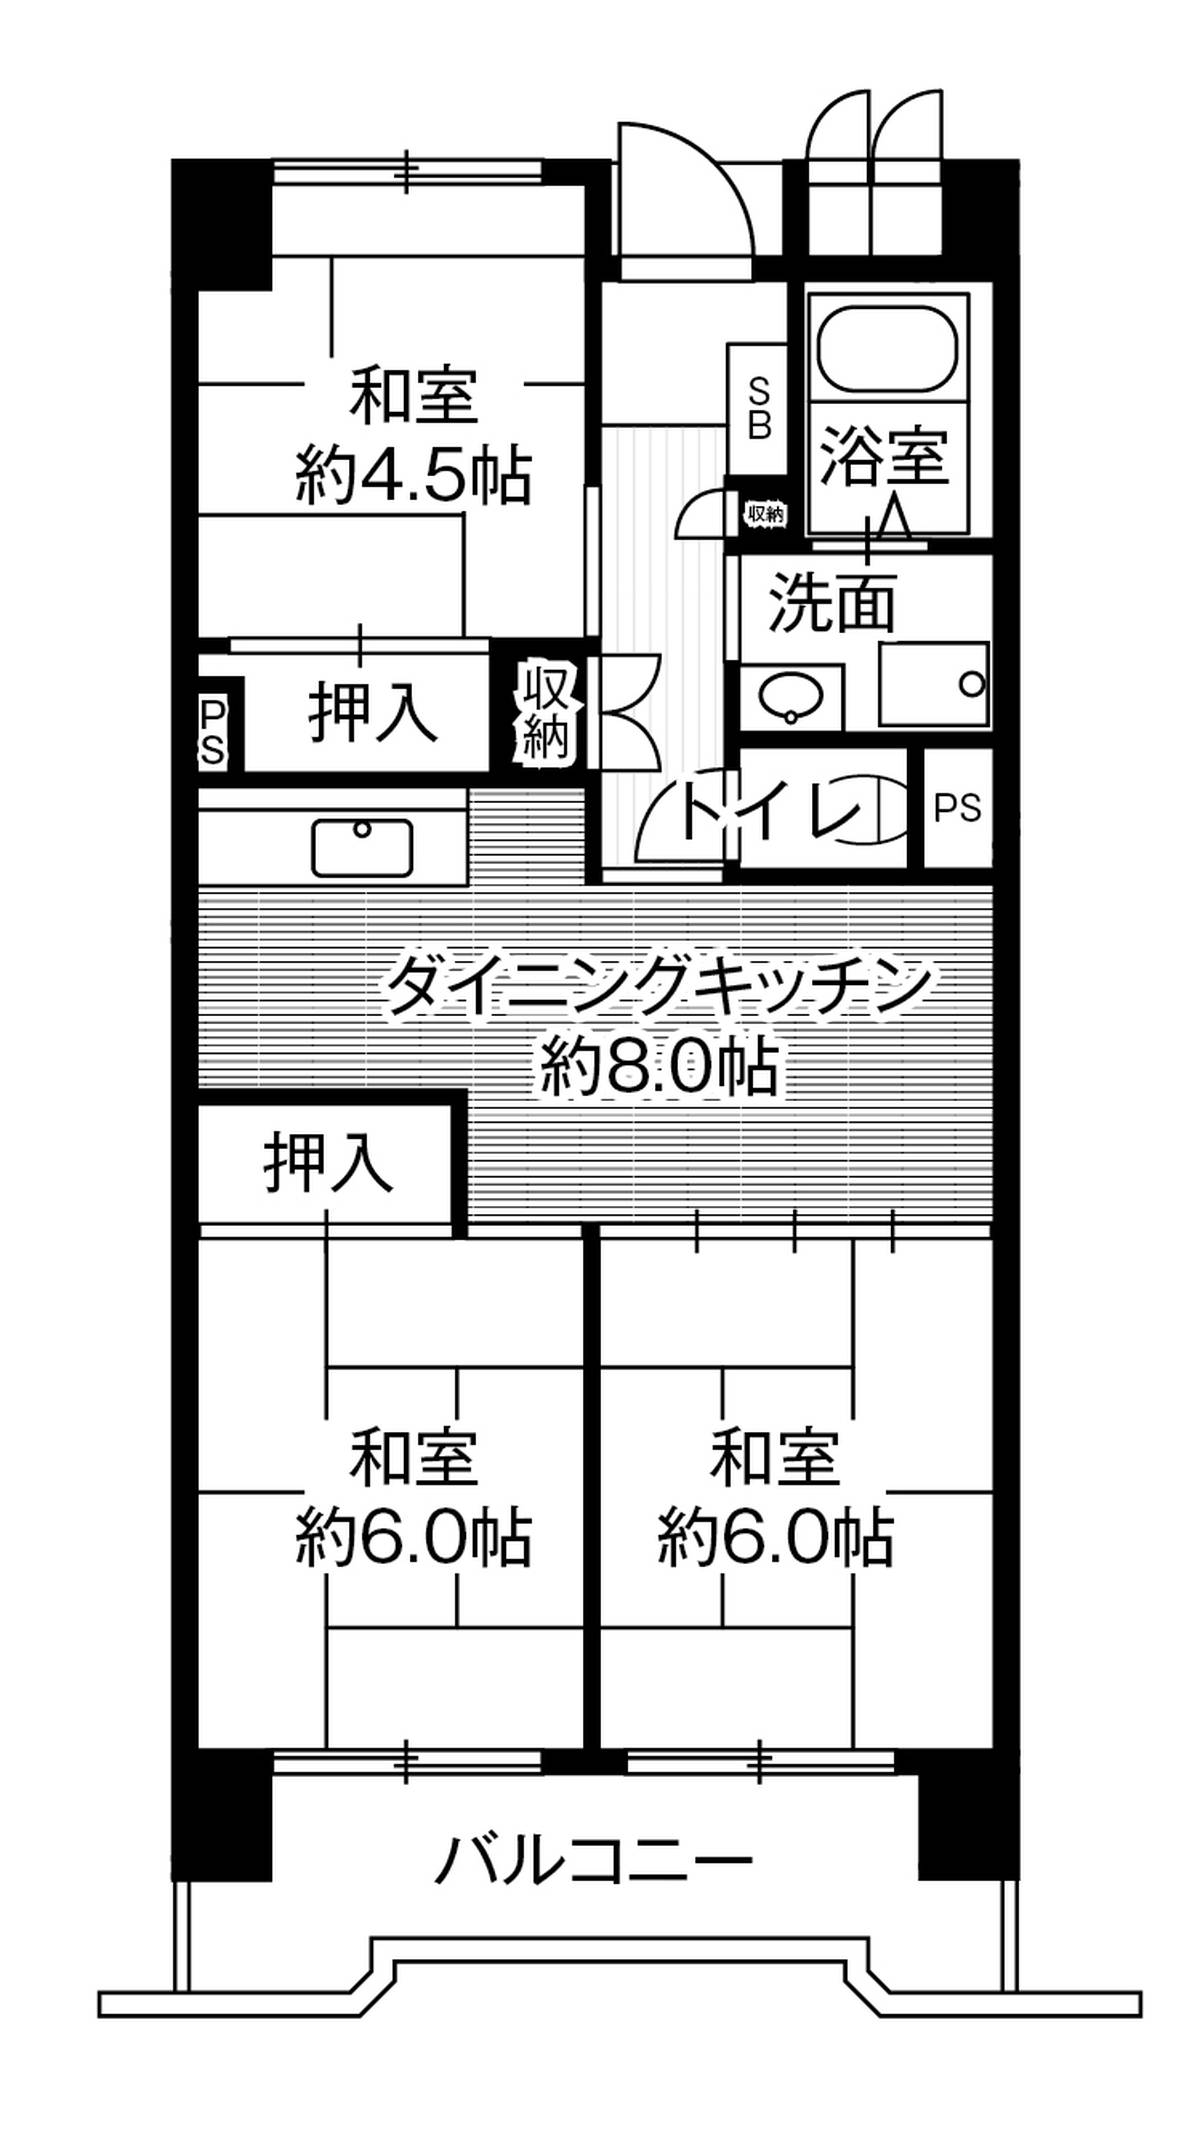 3DK floorplan of Village House Kasadera Tower in Minami-ku